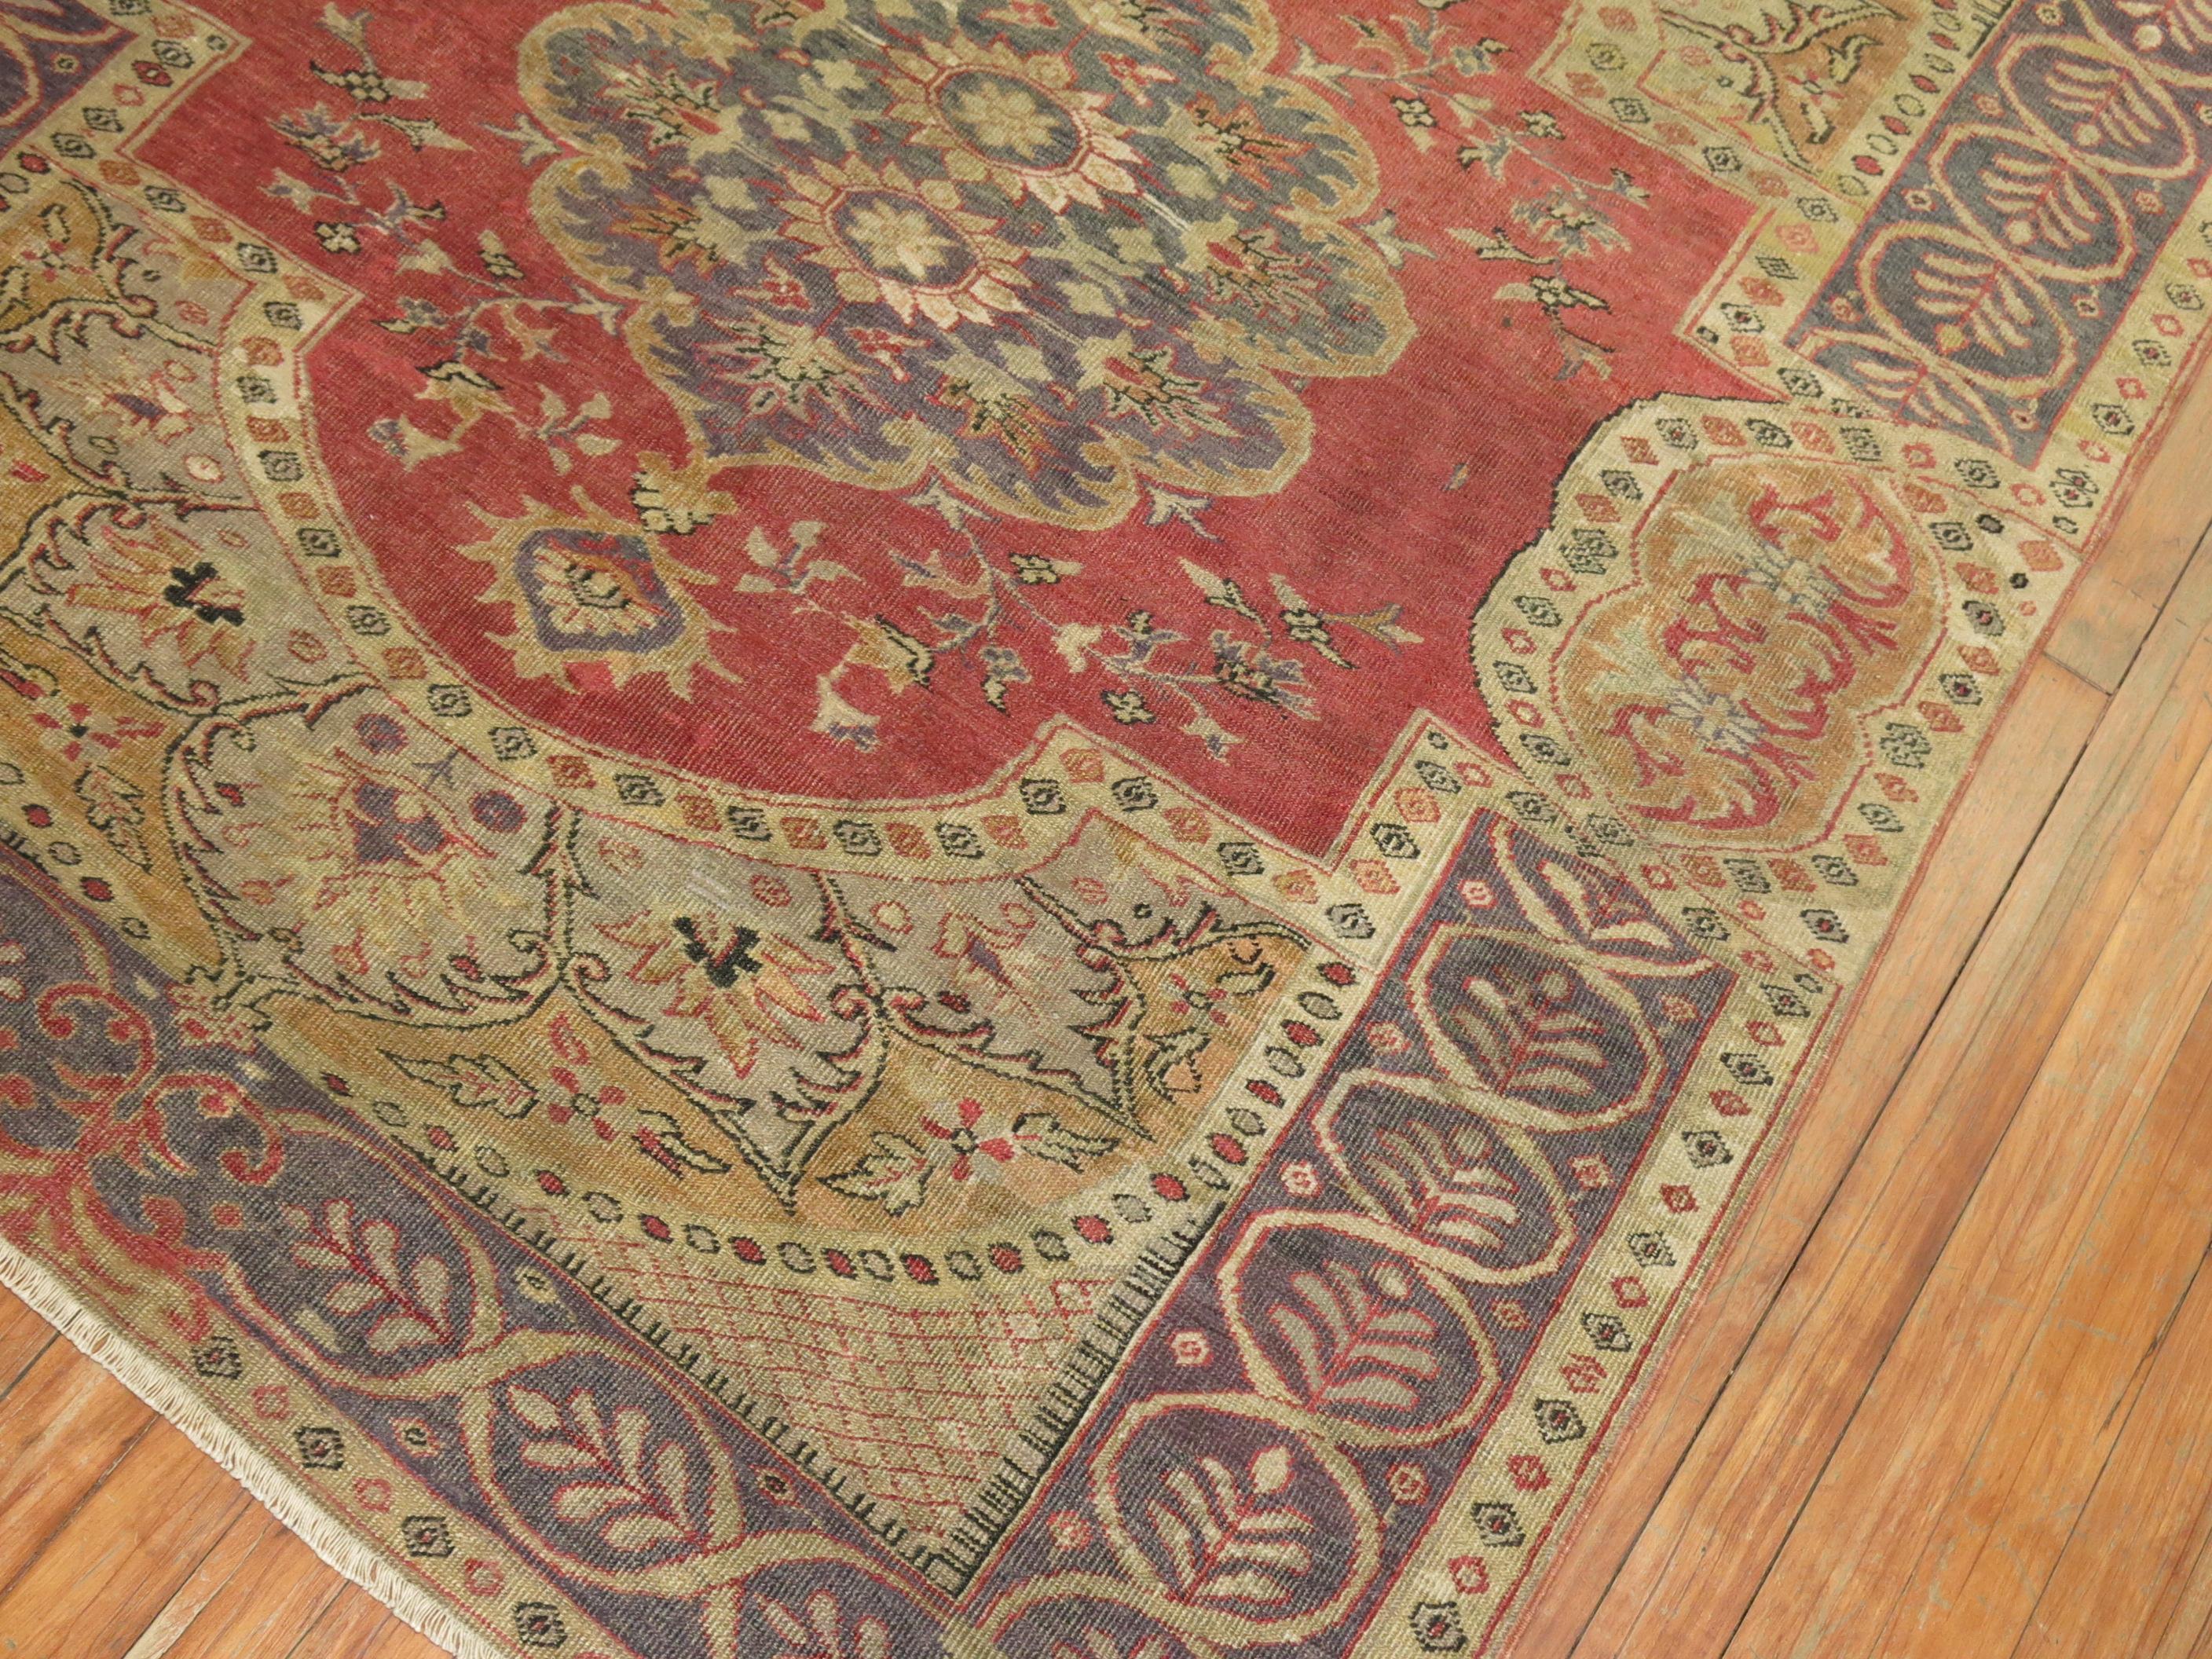 Ein sehr feiner handgeknüpfter, wahrhaft göttlicher, formeller türkischer Sivas-Teppich aus dem späten 19. Sehr ungewöhnliches Design und Rand.